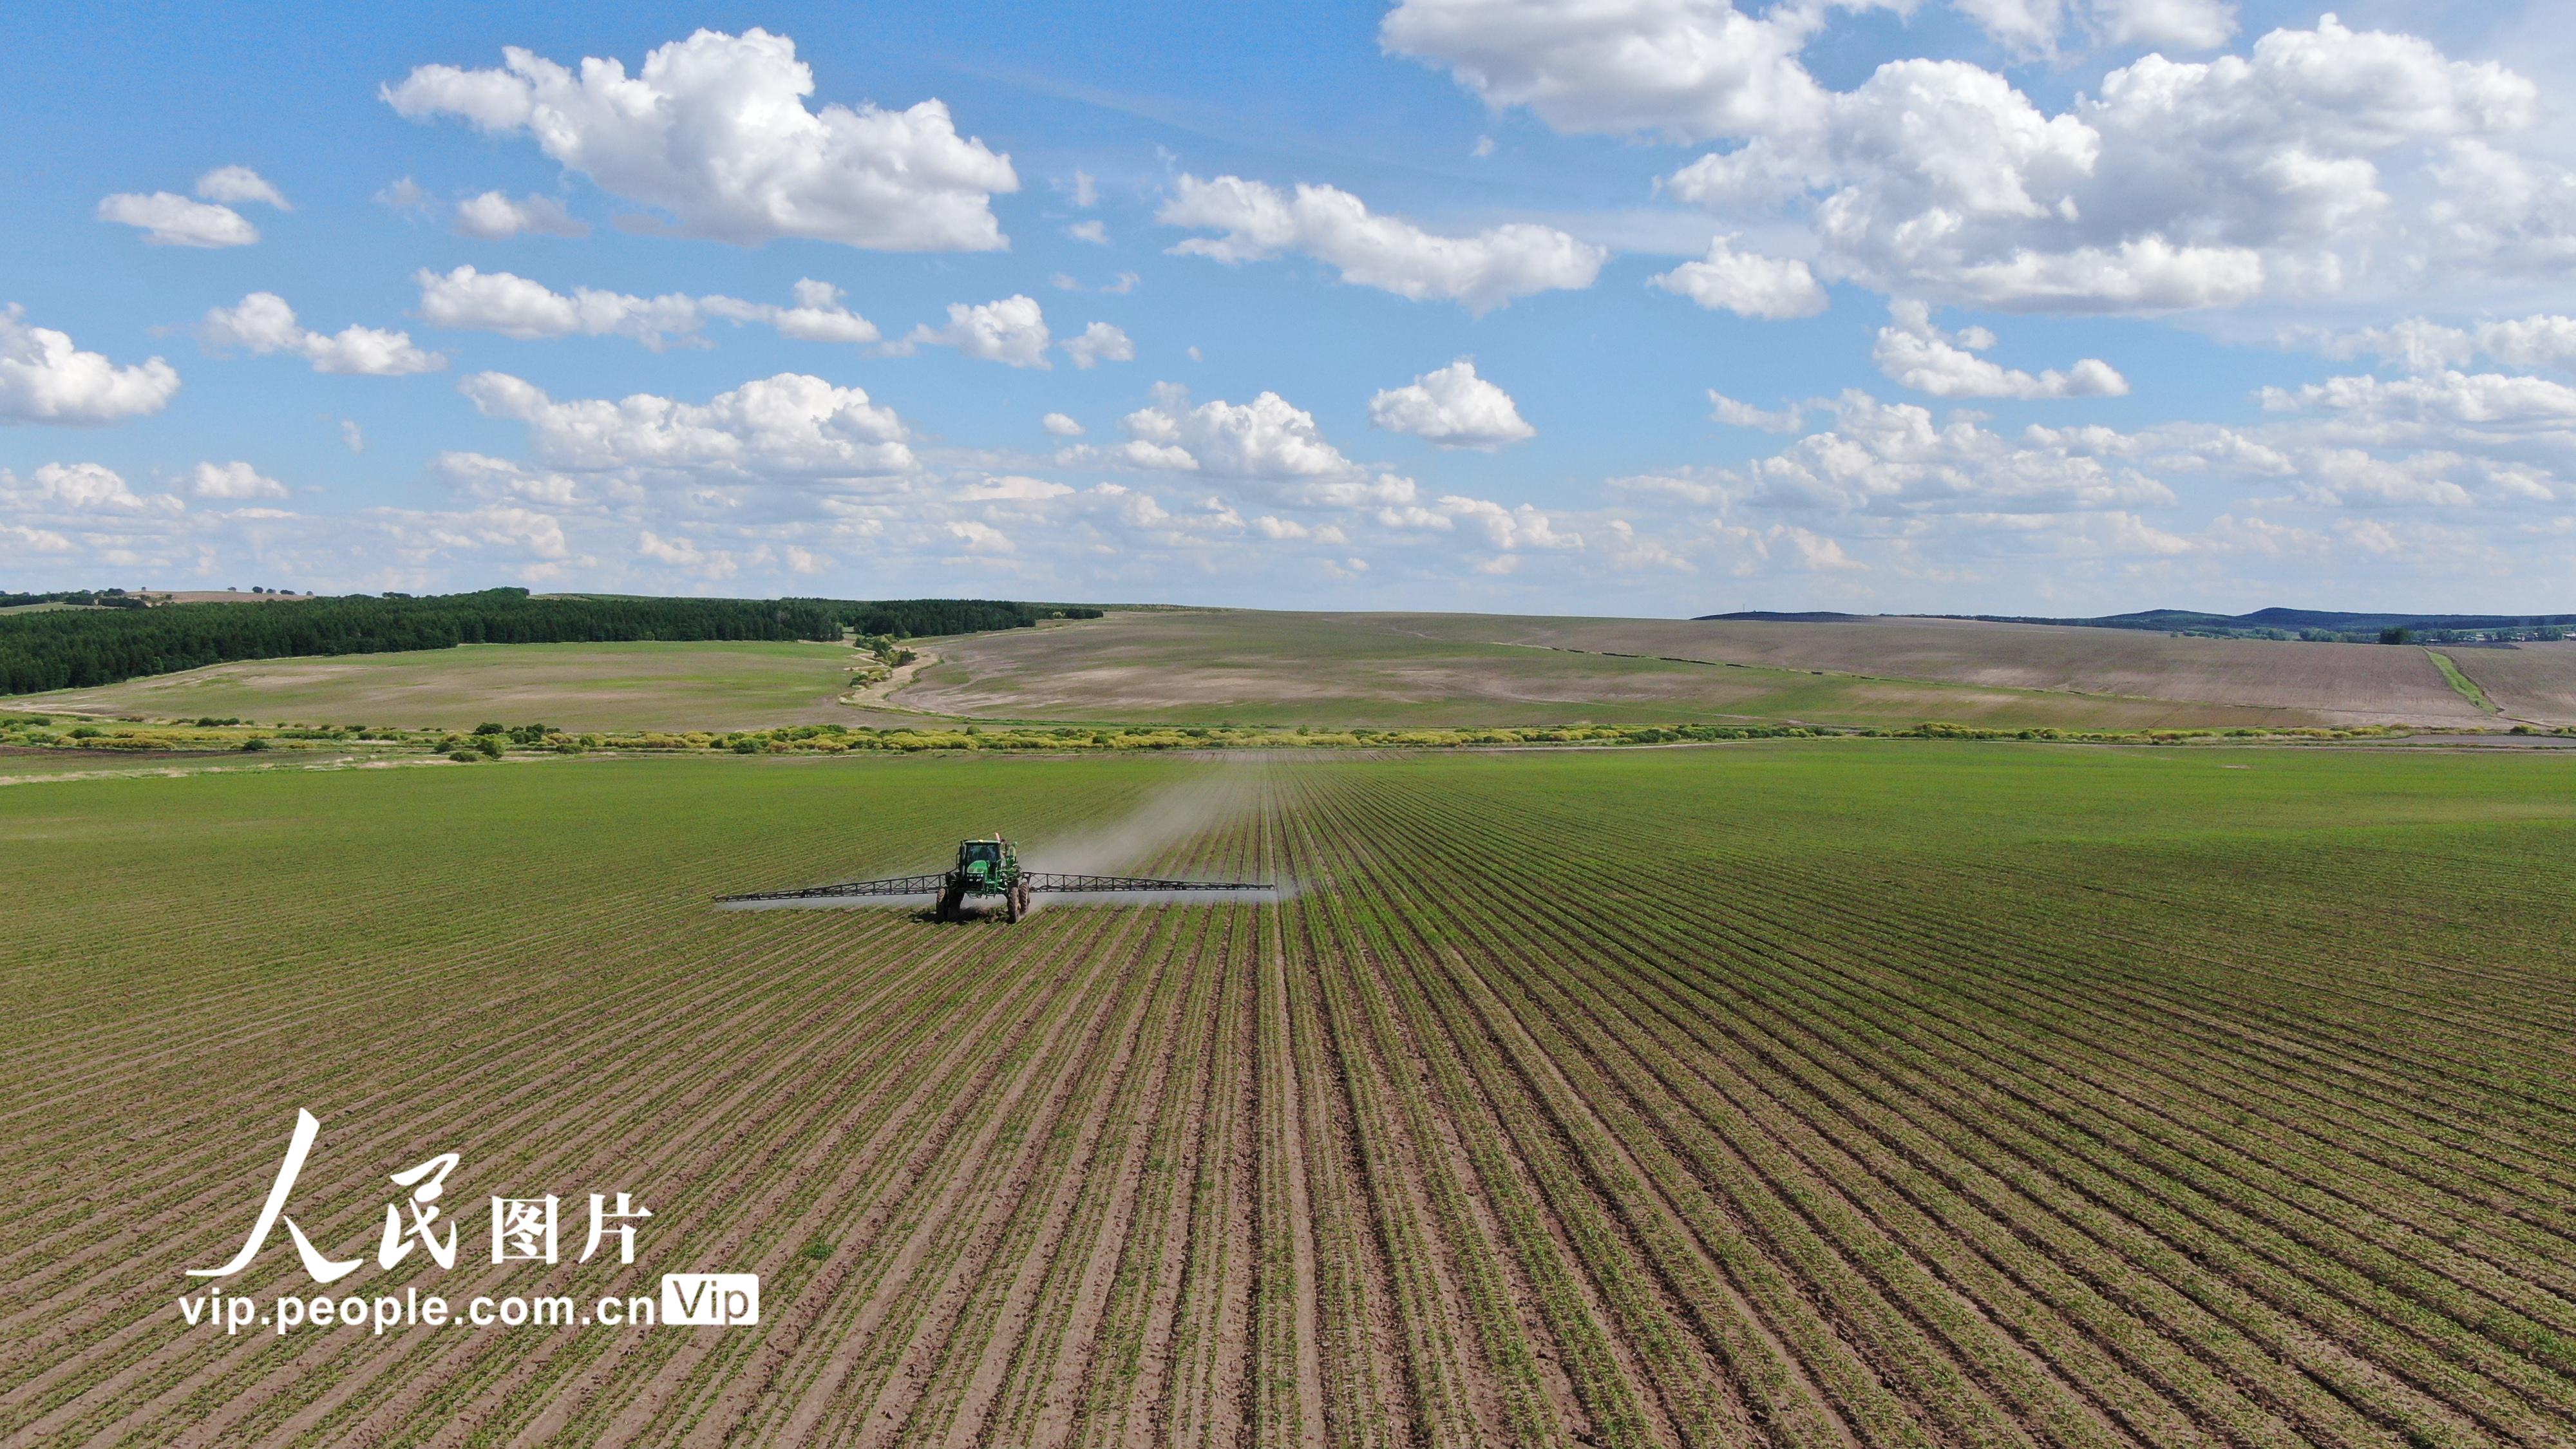 北大荒紅五月農場全力開展苗期除草作業、中耕施肥作業。